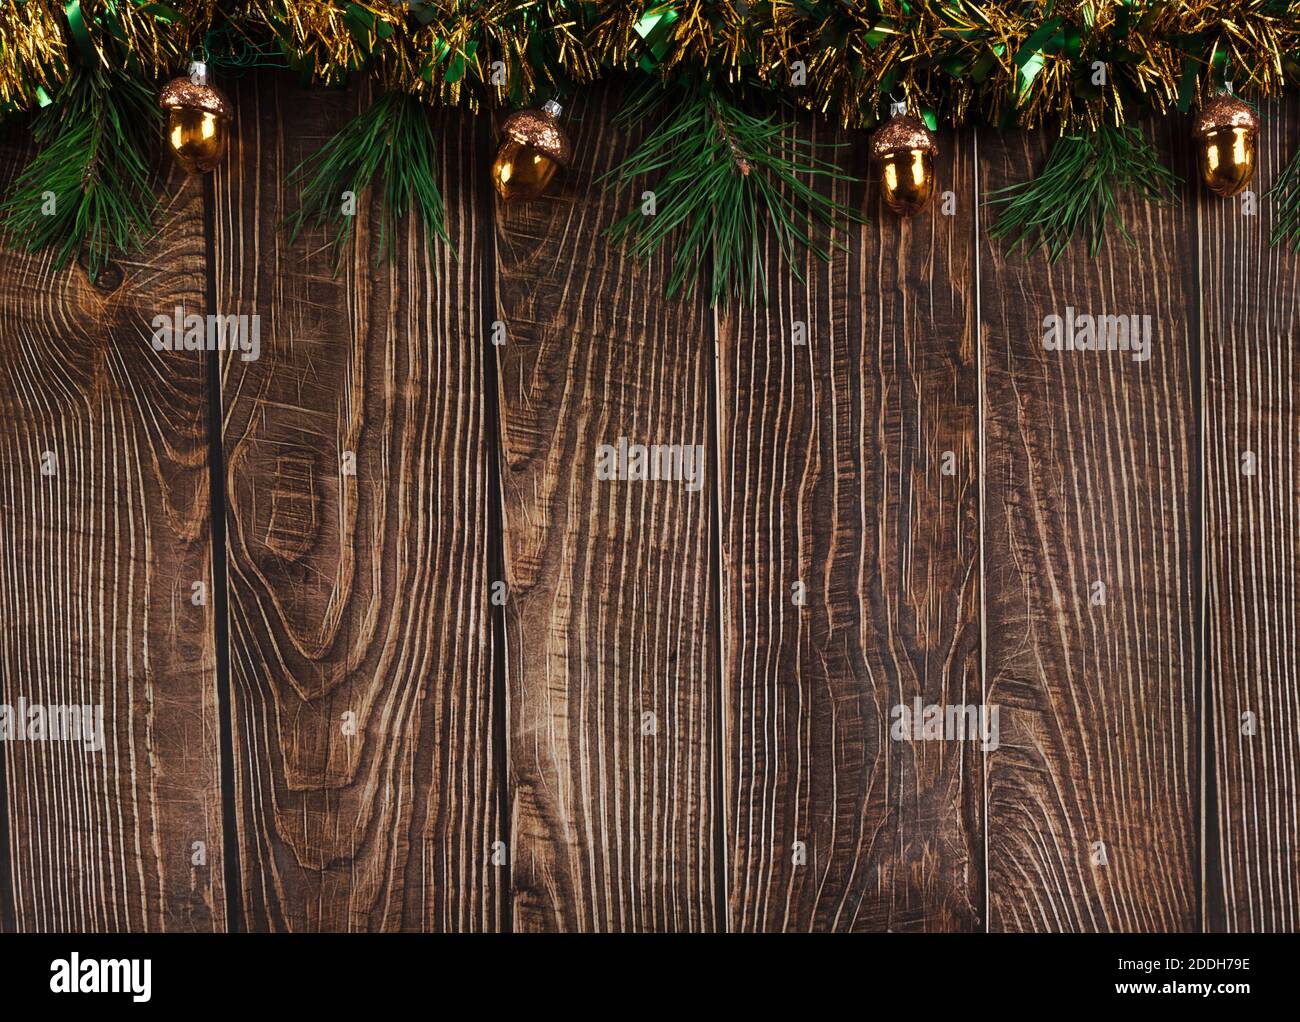 Dunkle Holzbretter Hintergrund mit schimmernden grünen und gelben Lametta, Tannenzweigen und Glas weihnachtsdekorationen in Form von goldenen Eicheln. Ne Stockfoto